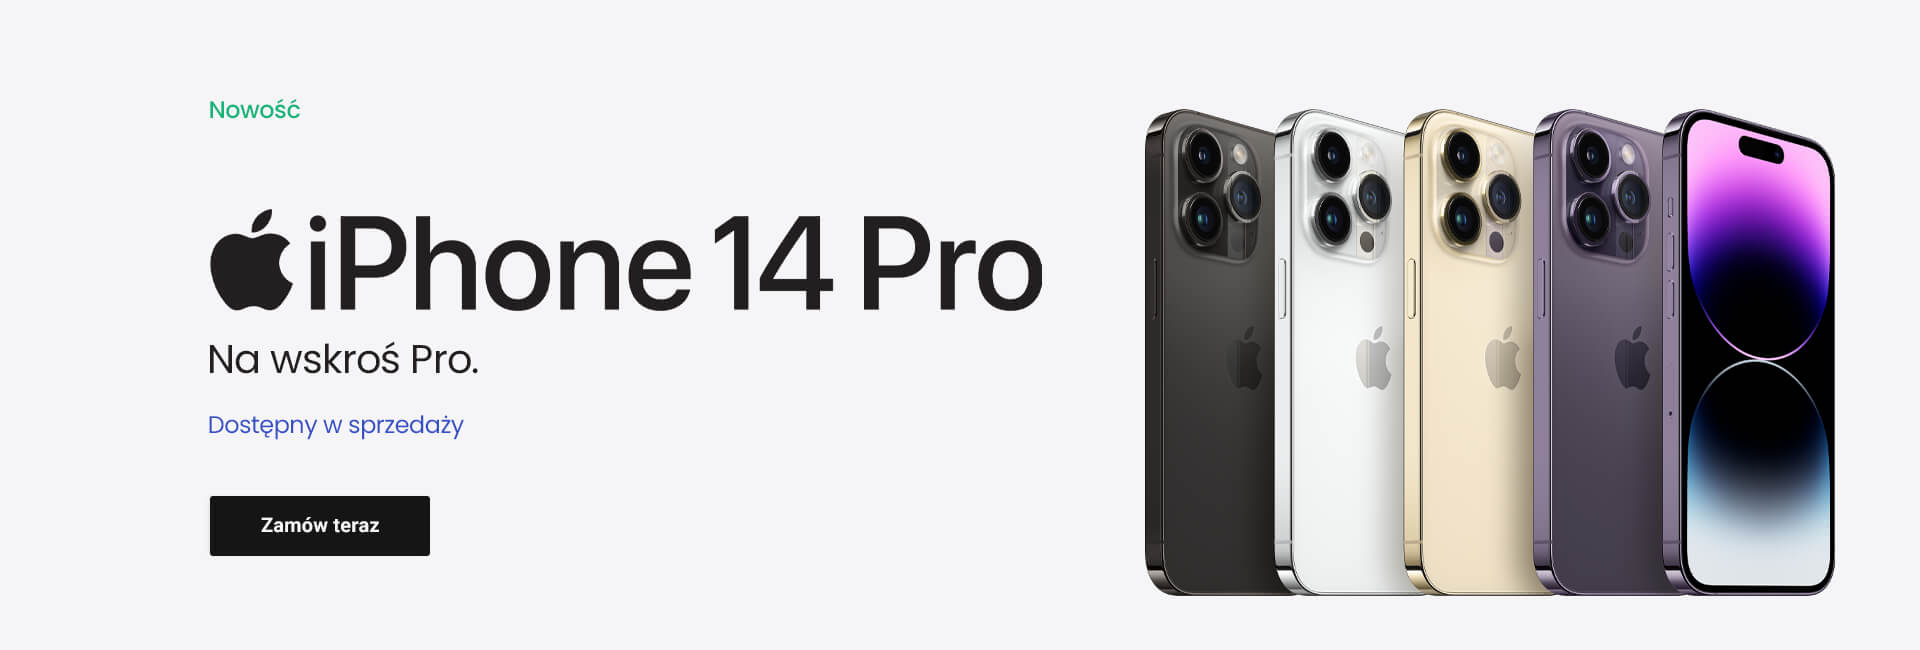 iPhone 14 Pro - Poza skalą.